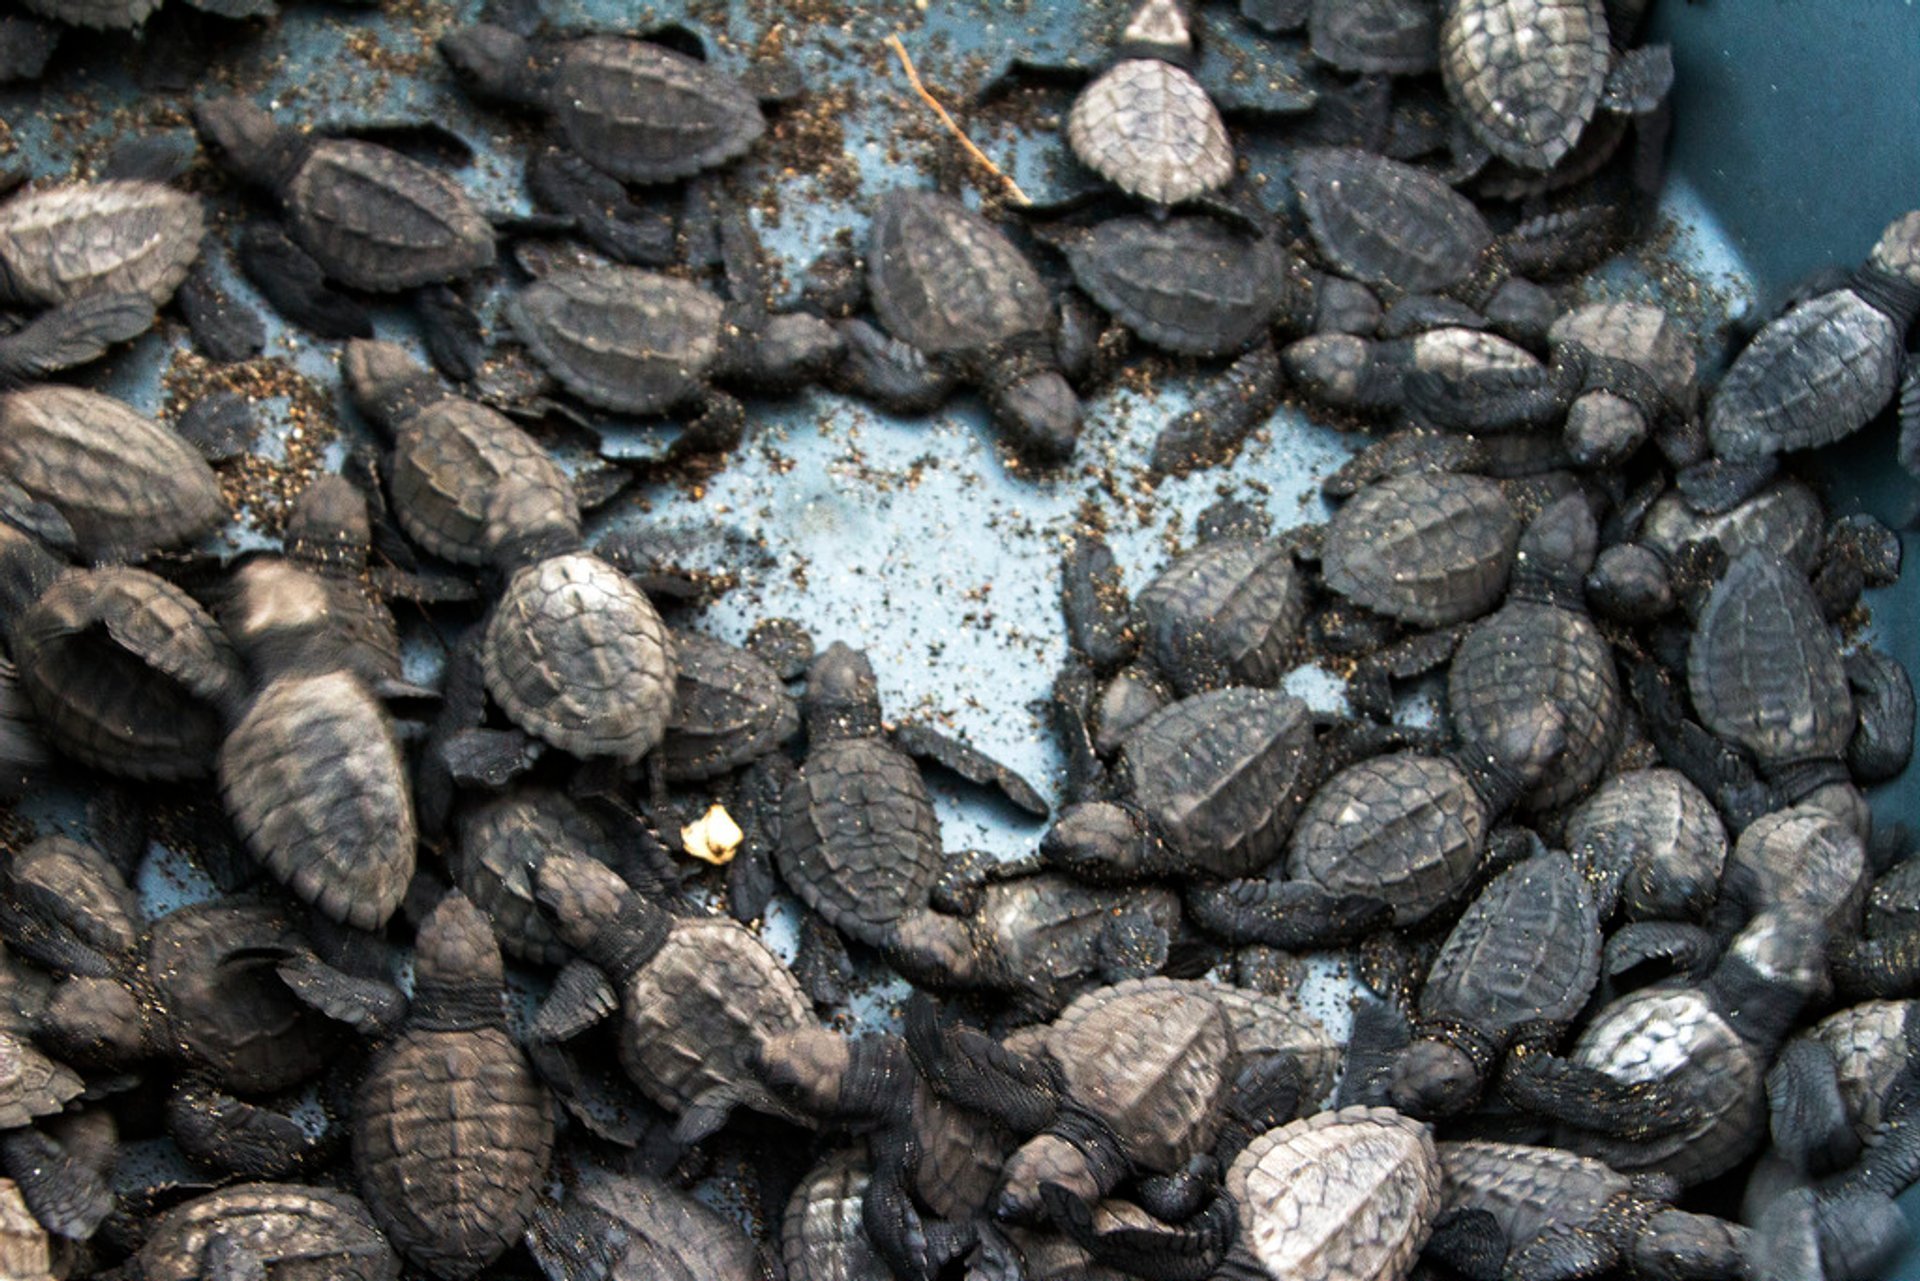 Beschleunigte Schildkröten